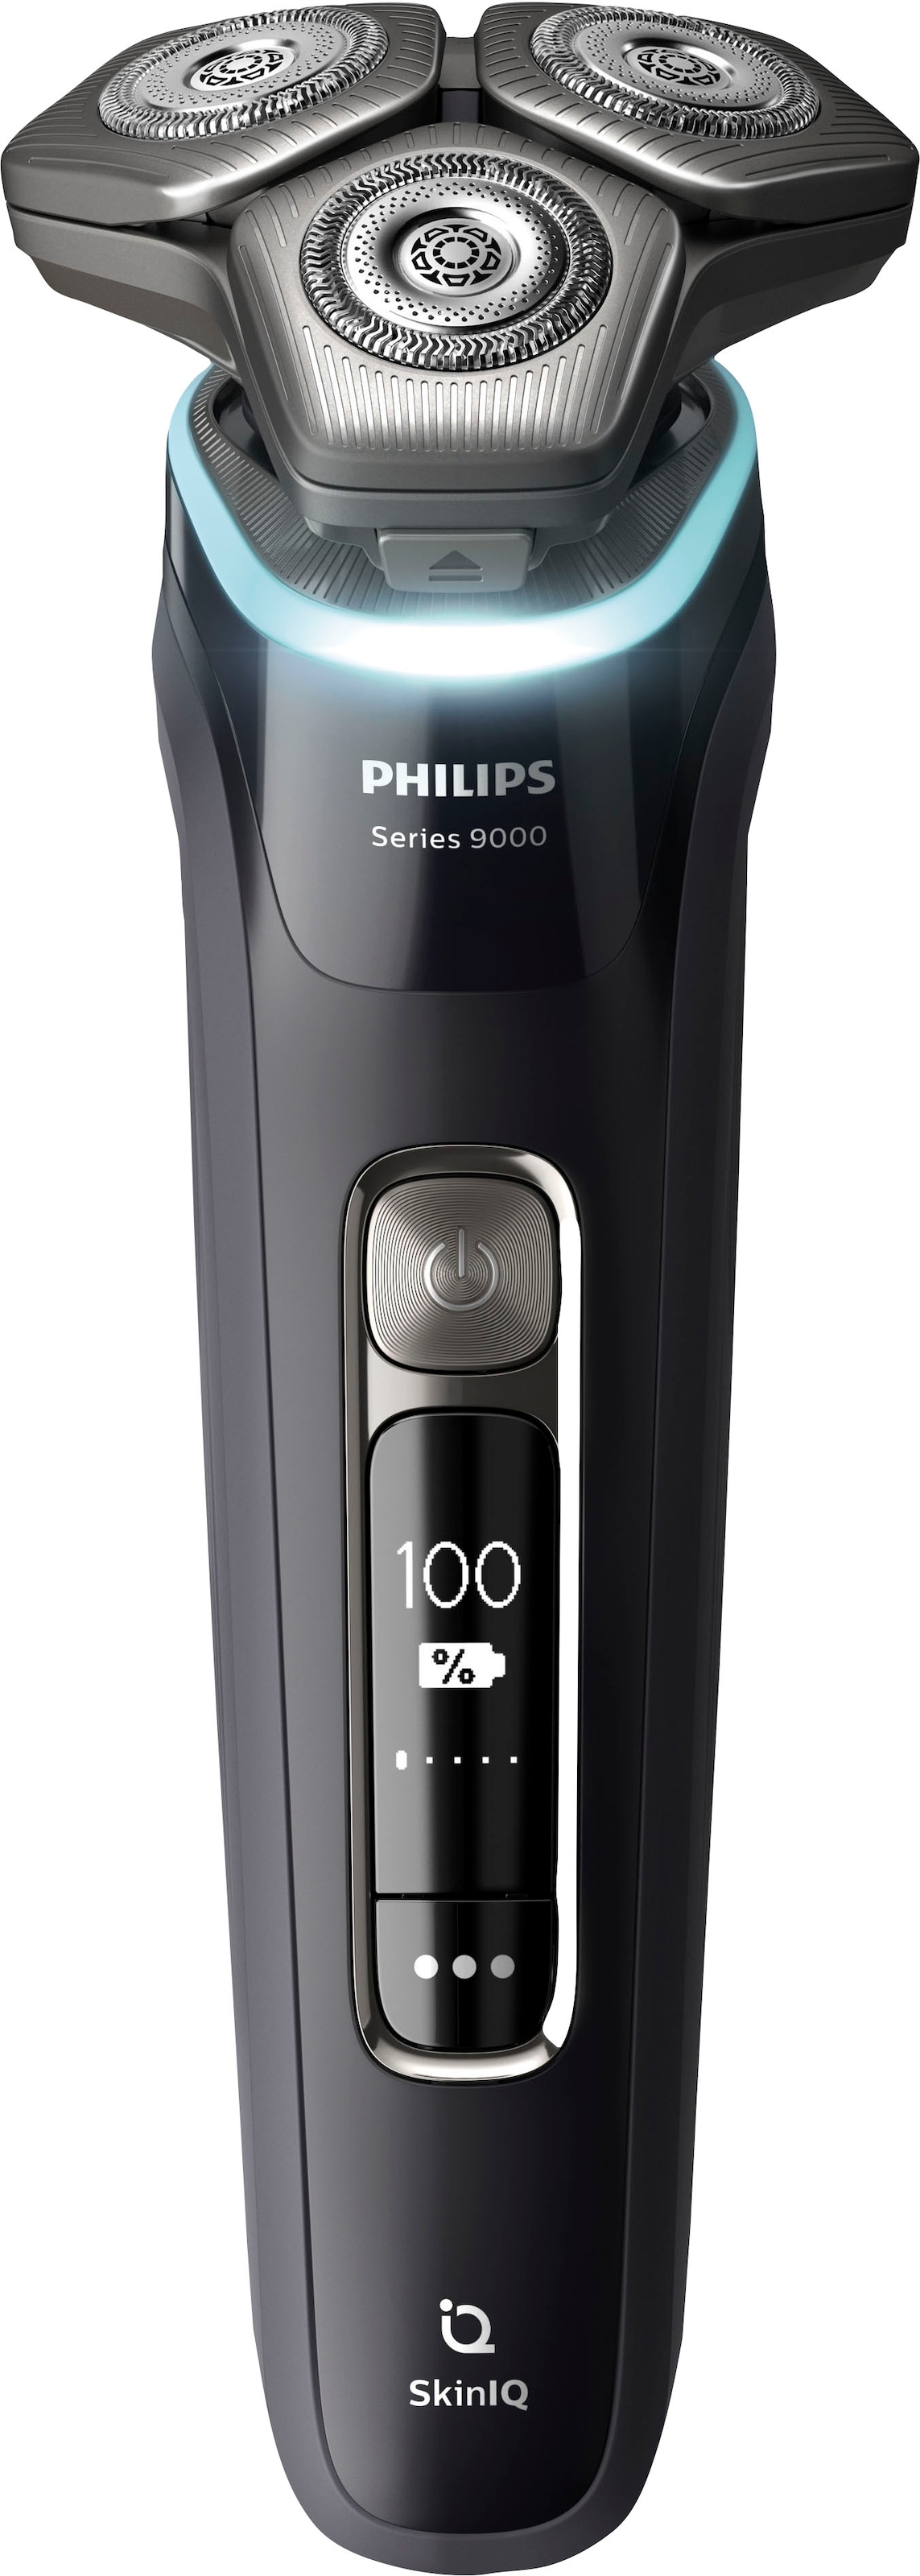 Philips Elektrorasierer »Shaver Series 9000 S9976/55«, integrierter Präzisionstrimmer, 2 Reinigungskartuschen, Ladestand, Etui, mit SkinIQ Technologie